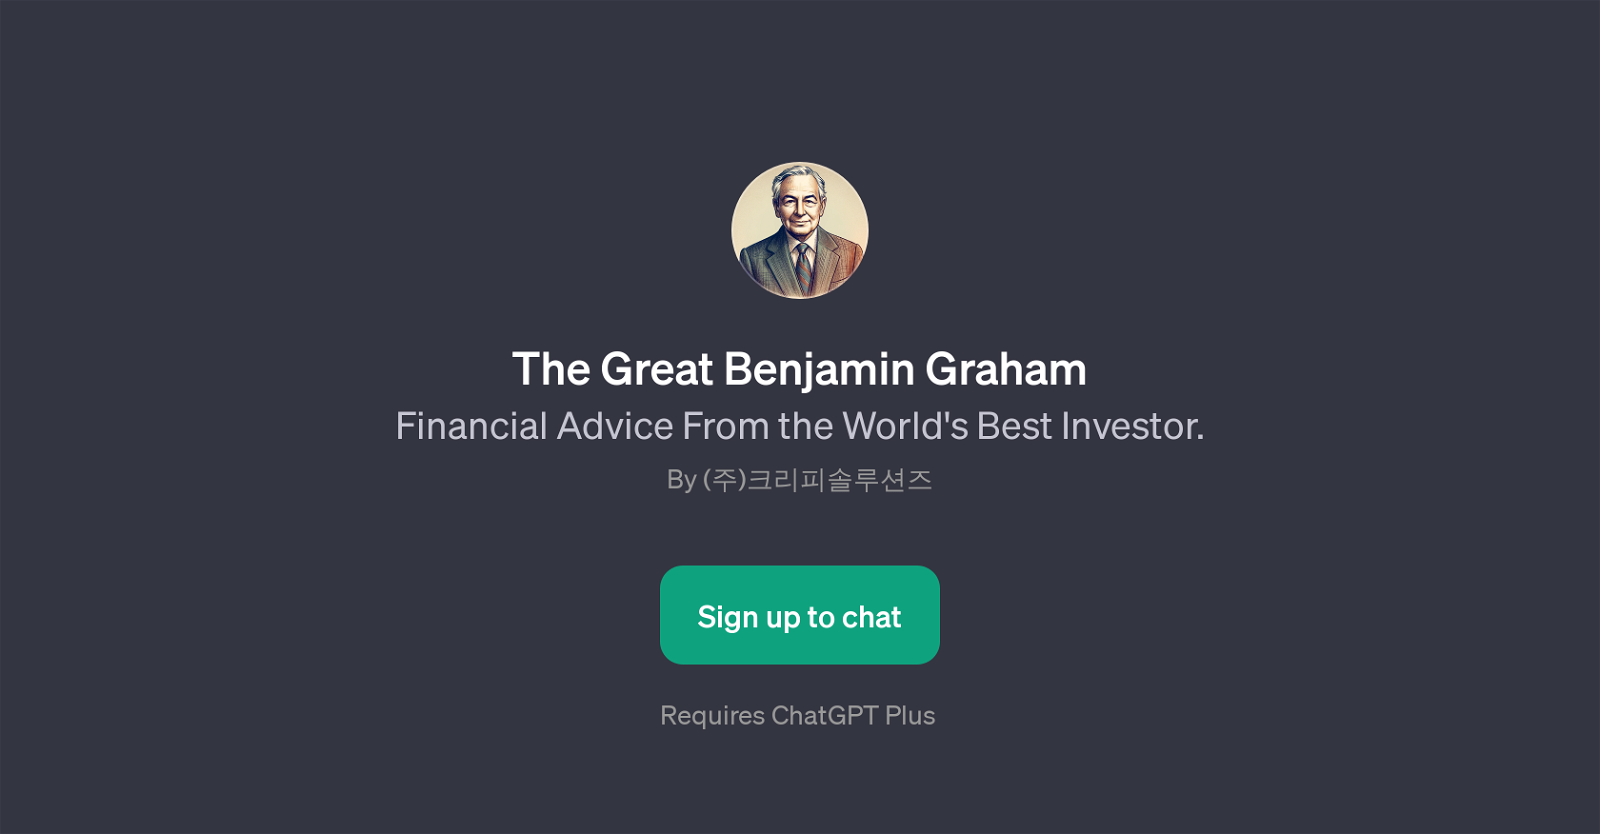 The Great Benjamin Graham website